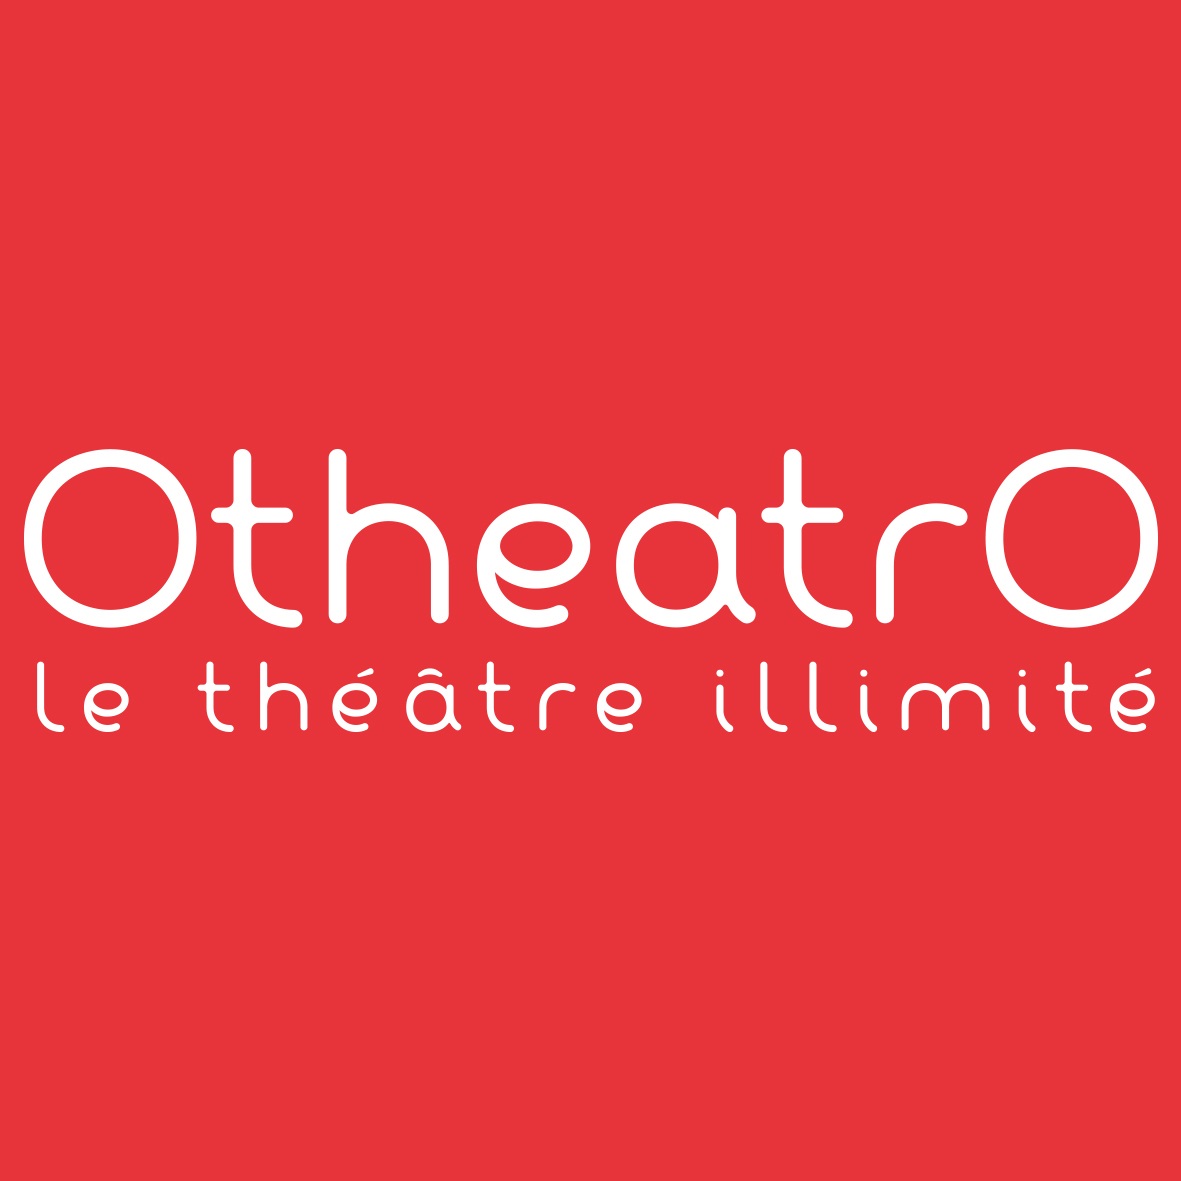 Otheatro